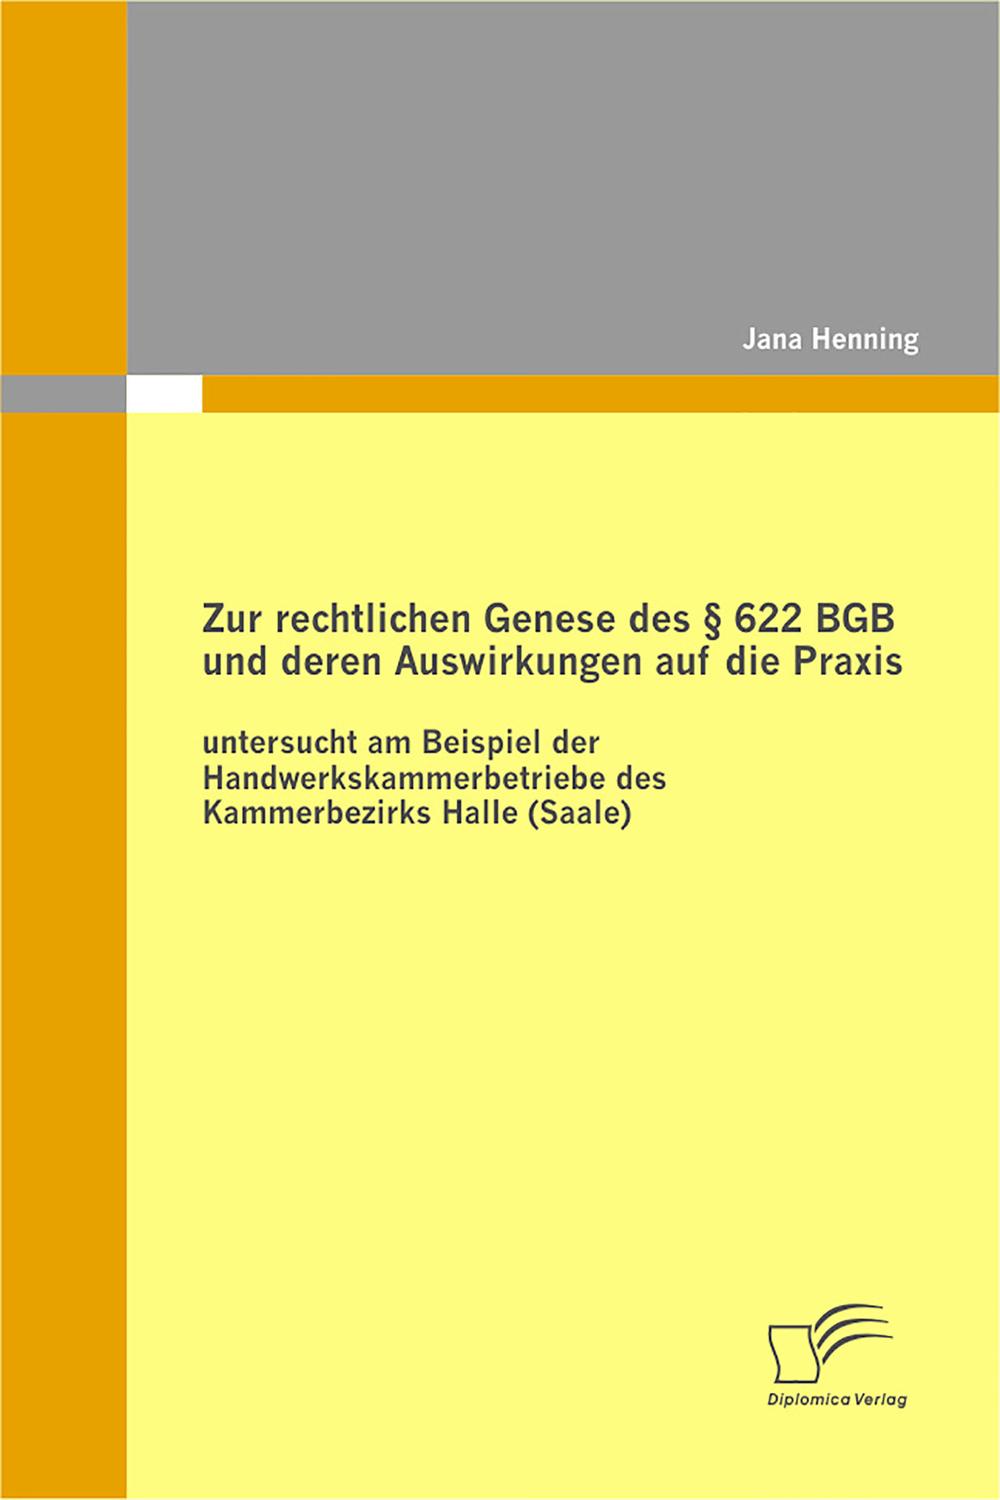 Zur rechtlichen Genese des § 622 BGB und deren Auswirkungen auf die Praxis: untersucht am Beispiel der Handwerkskammerbetriebe des Kammerbezirks Halle (Saale) - Jana Henning